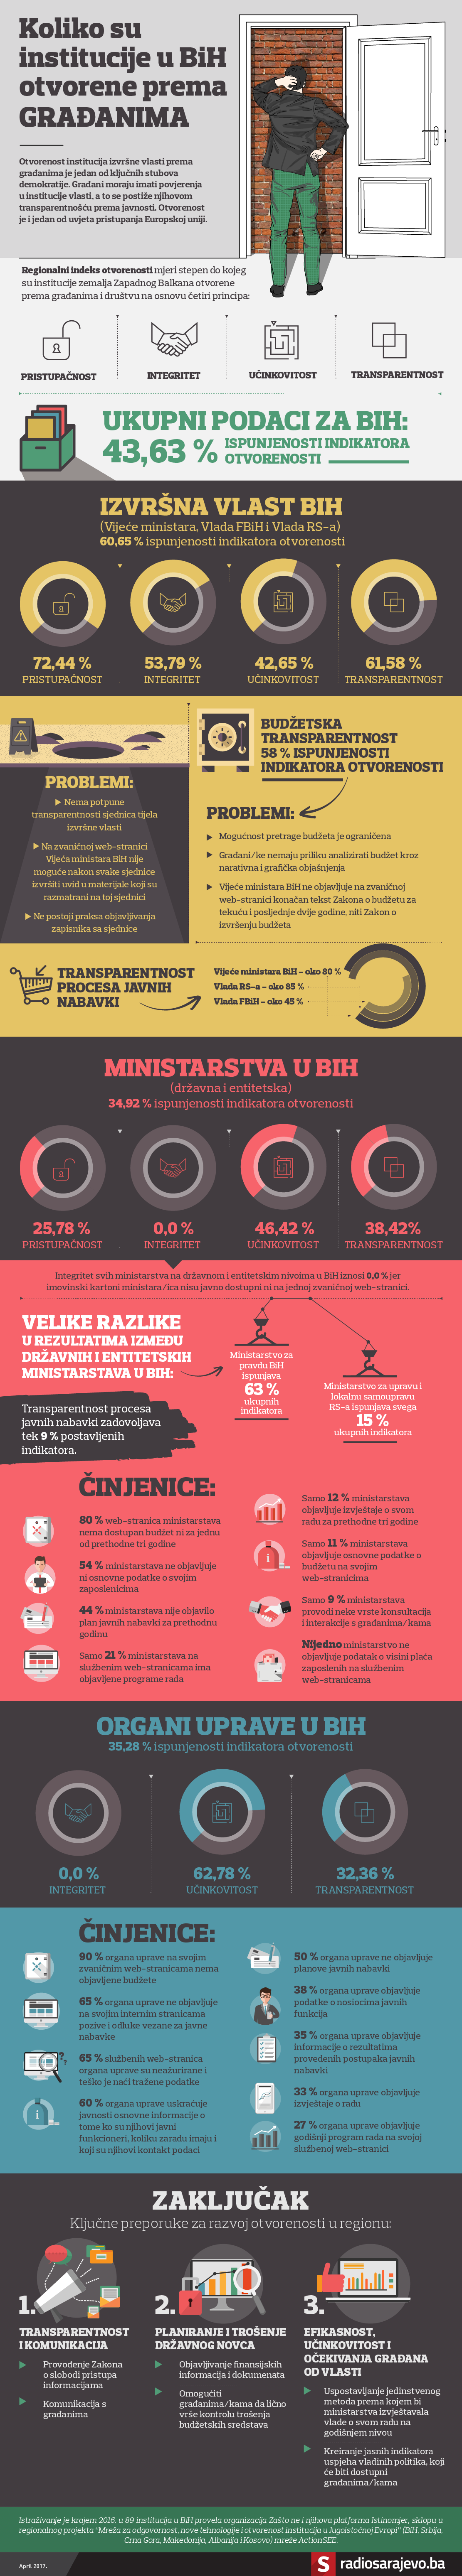 1_infografika-01.png - Glavom kroz zid: Koliko su bh. institucije otvorene građanima